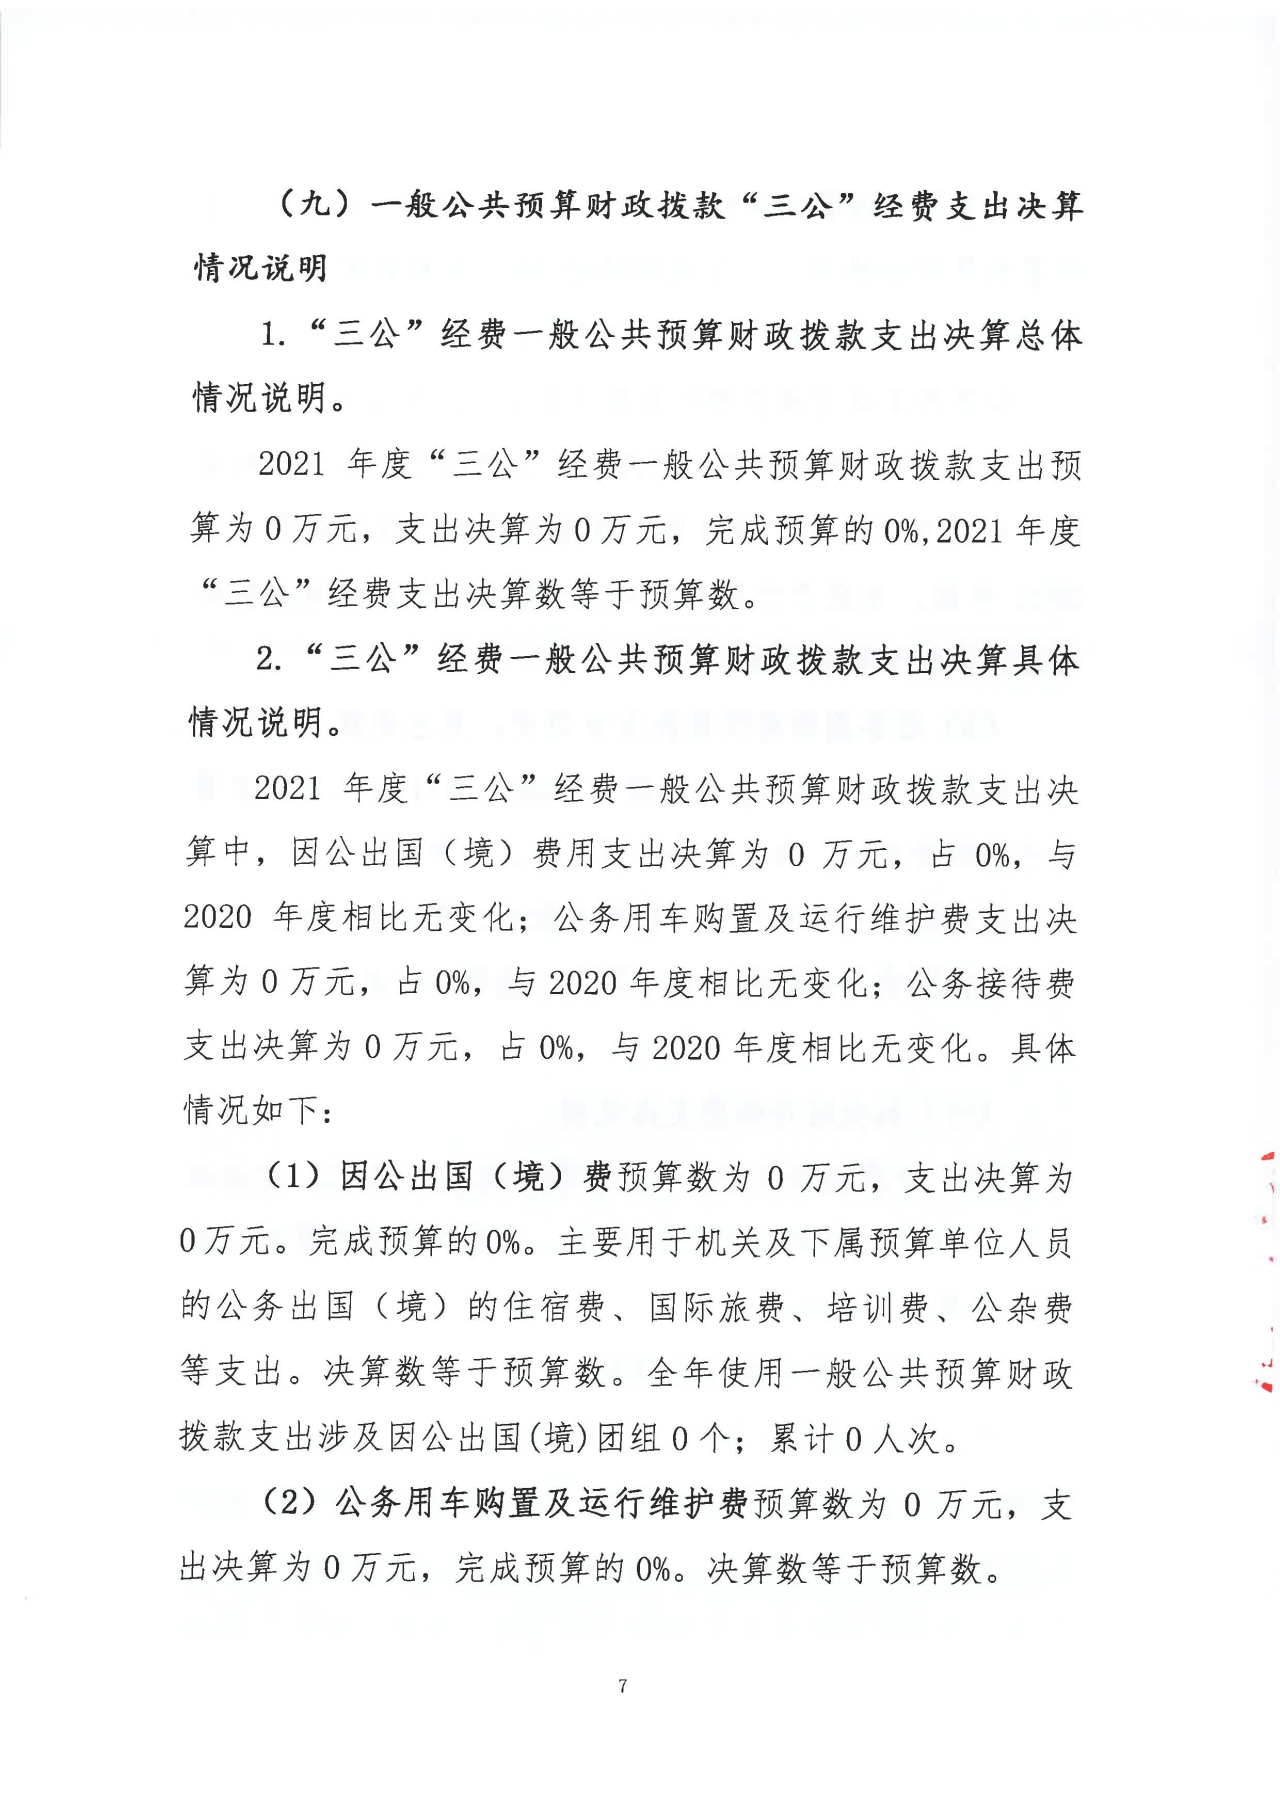 浙江日报报业集团2021年度部门决算_页面_09.jpg